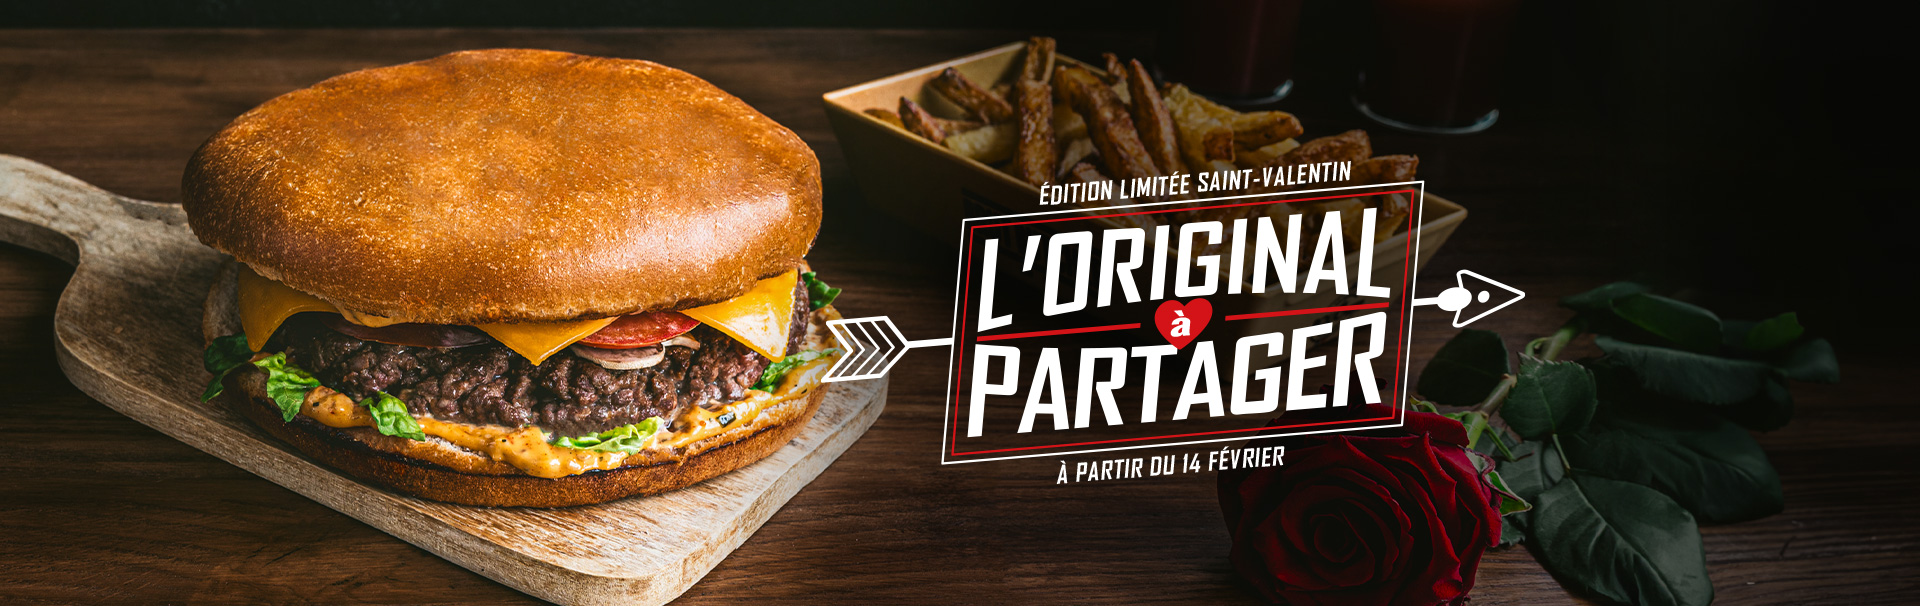 L'original à partager, un burger XXL en édition limitée chez Brut Butcher, le fast-food du boucher